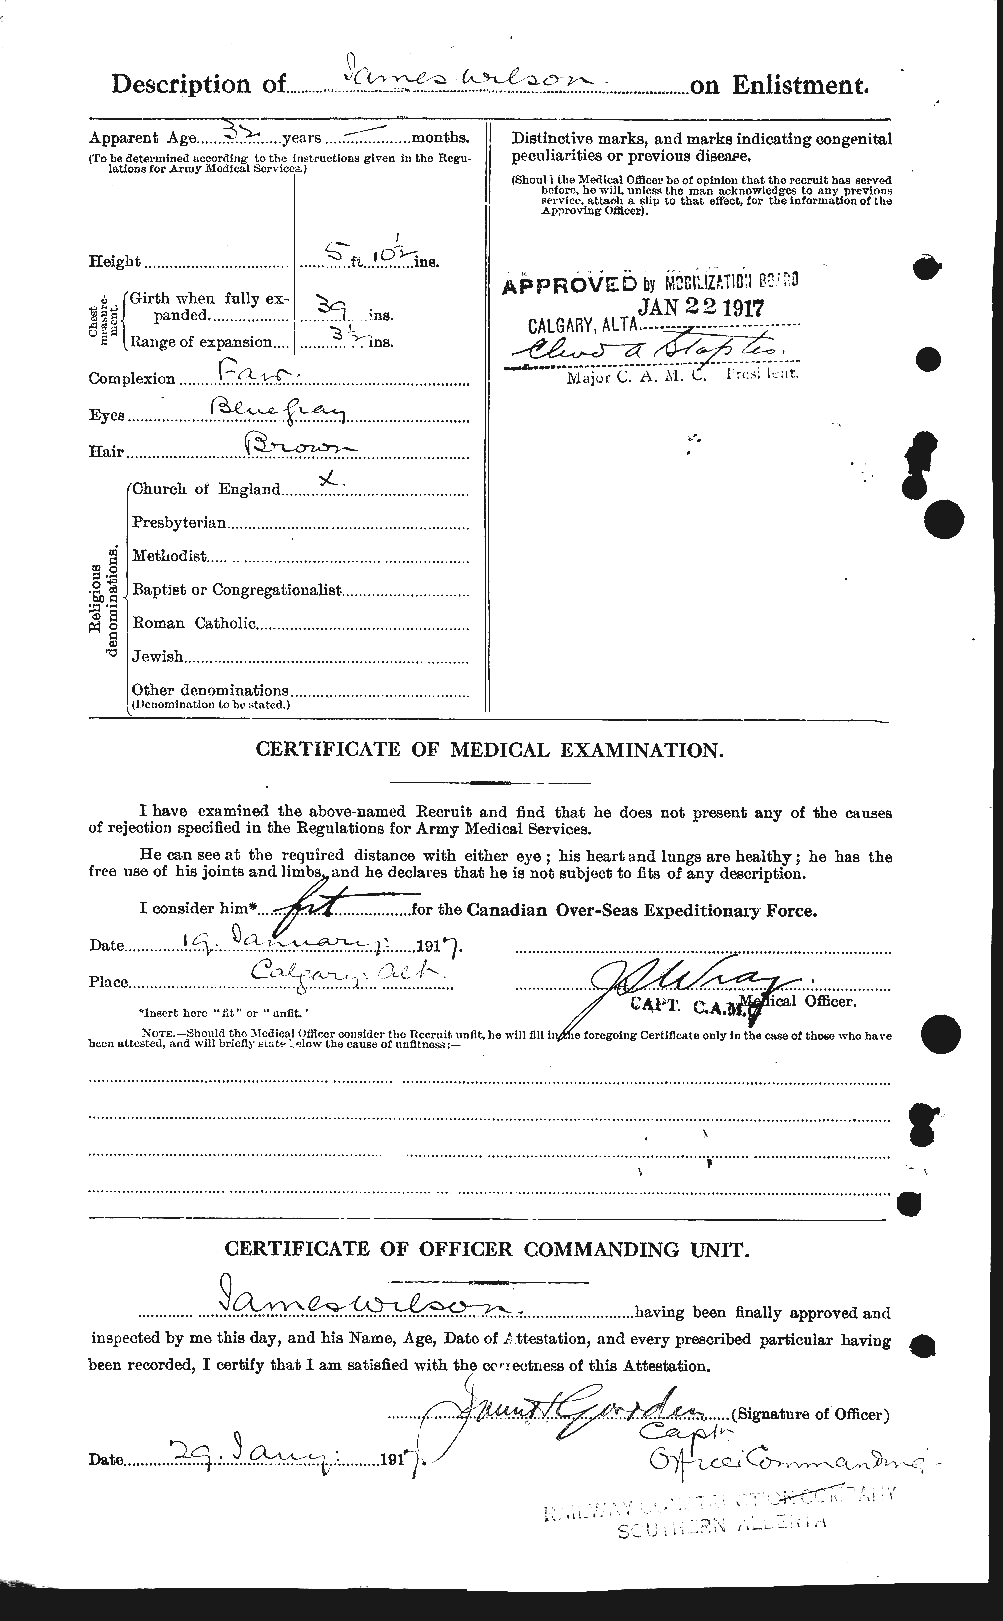 Dossiers du Personnel de la Première Guerre mondiale - CEC 681337b